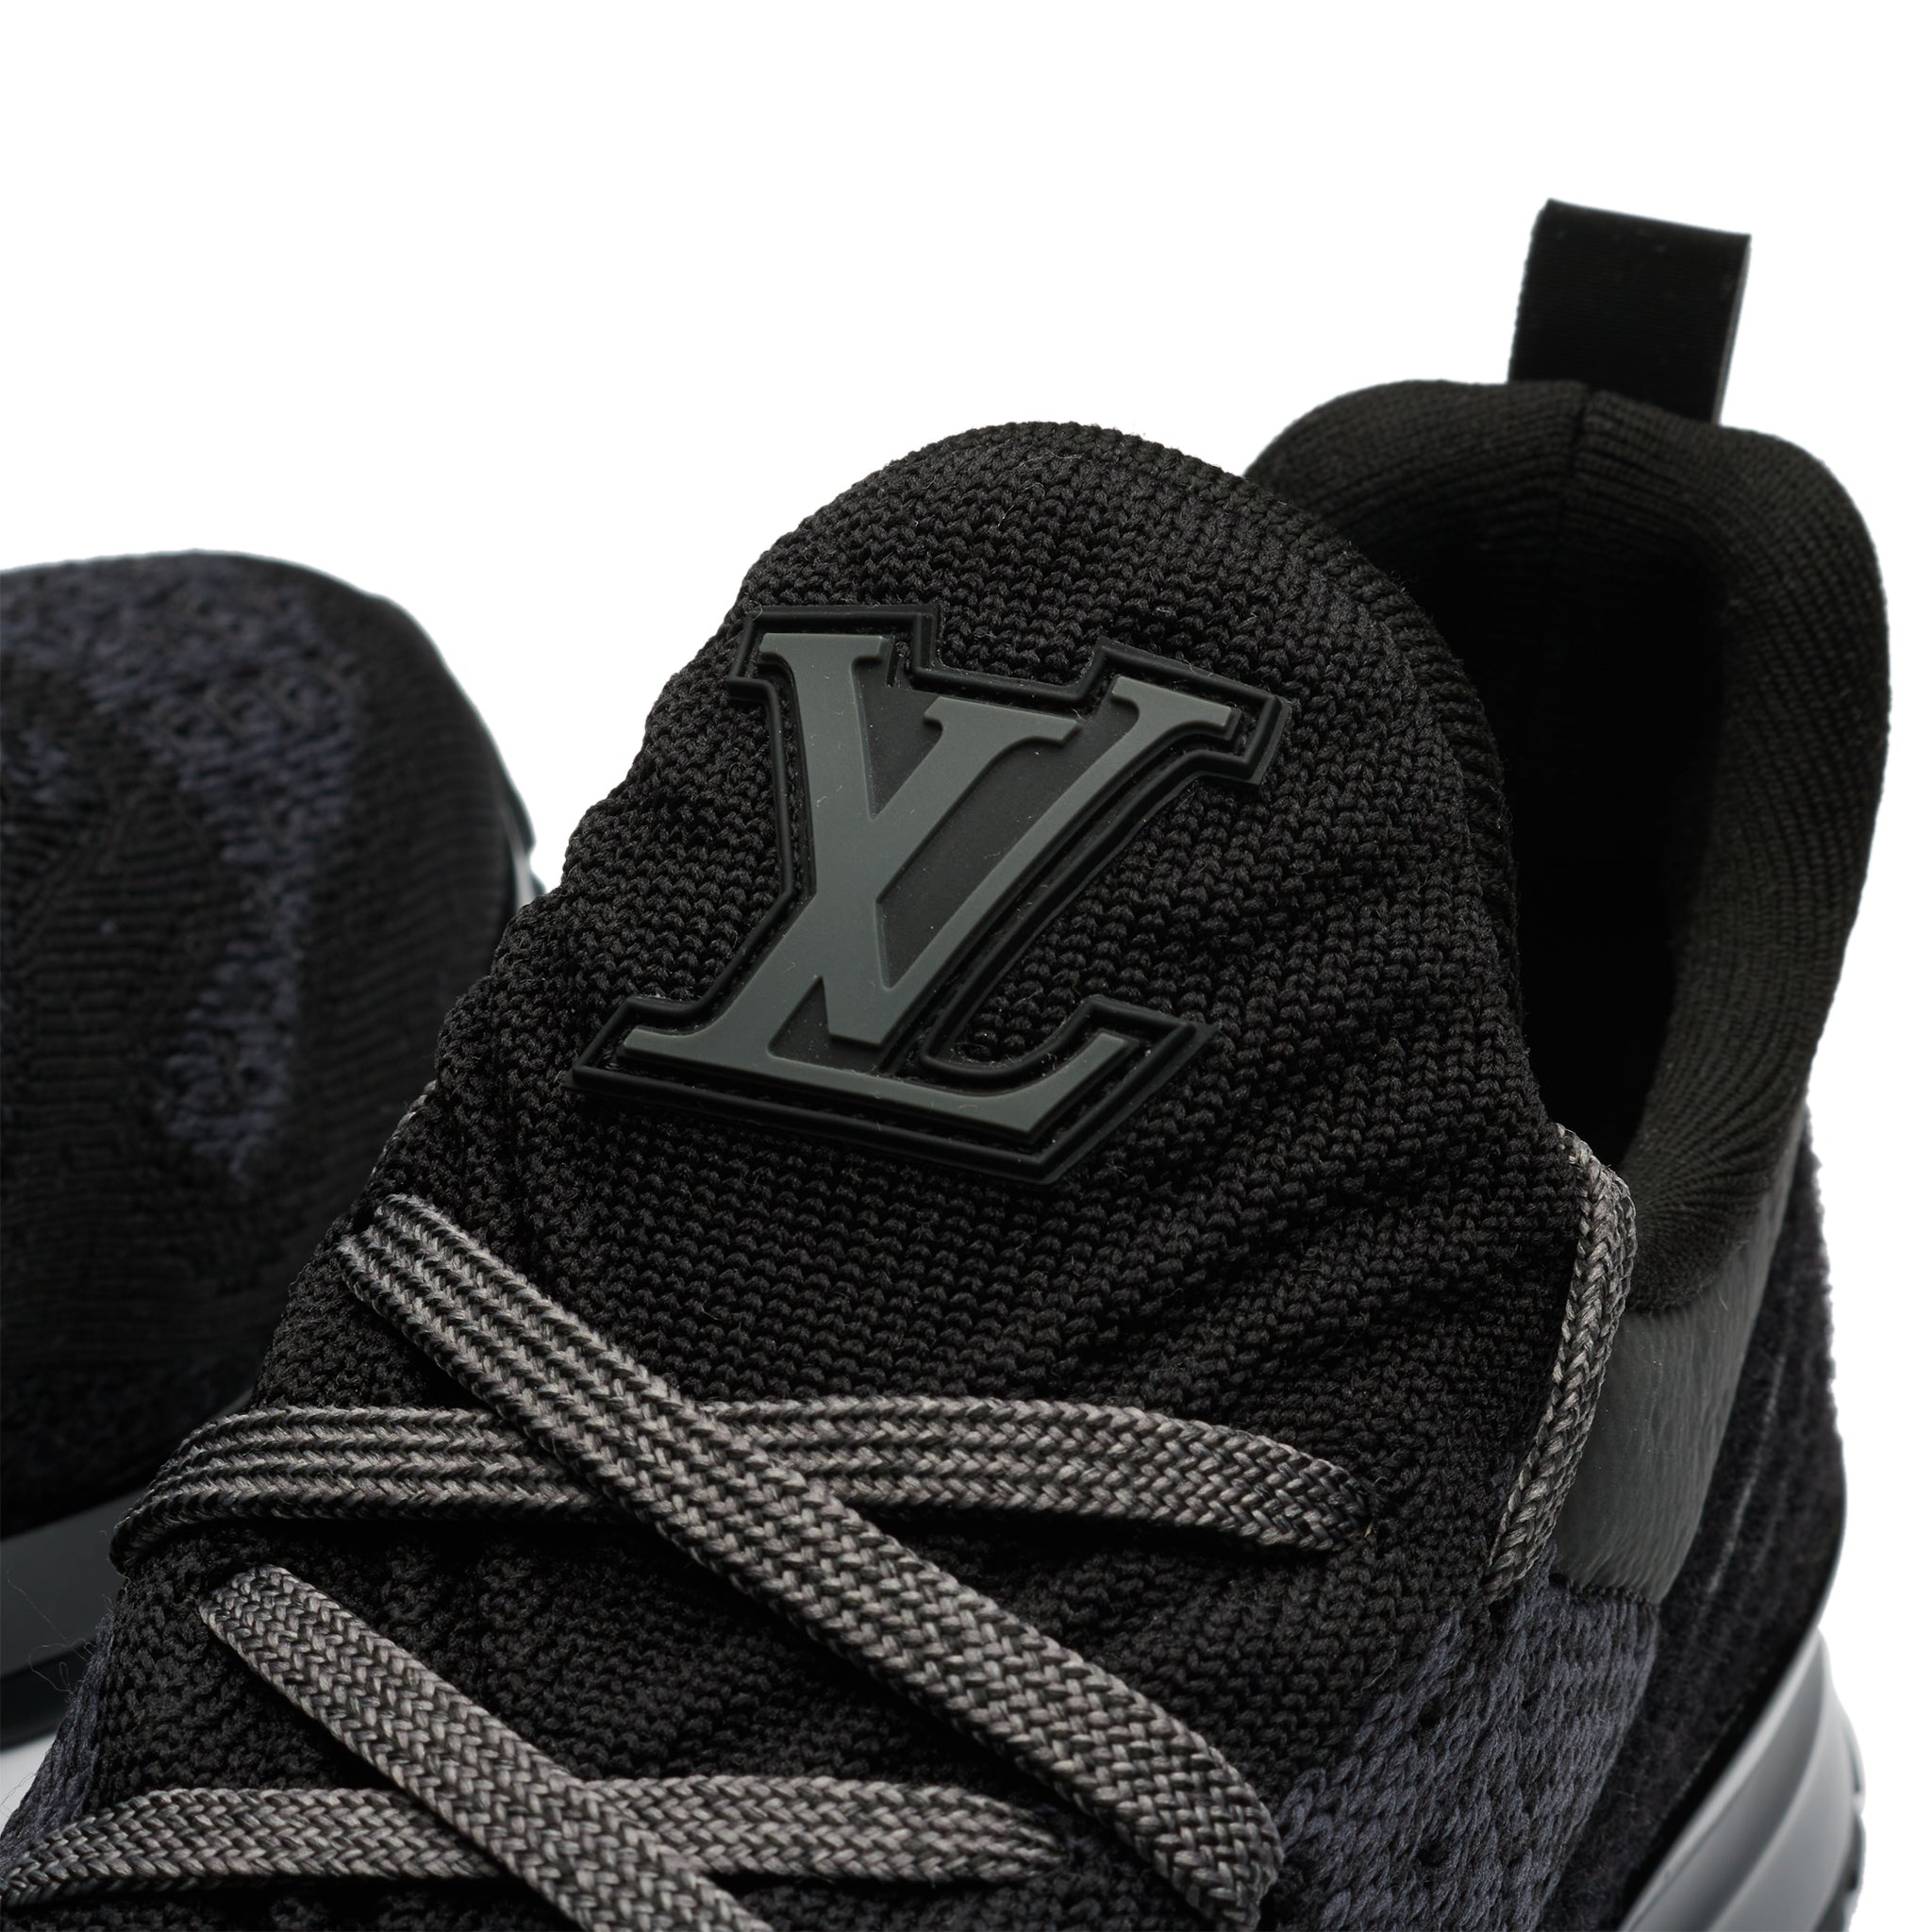 LOUIS VUITTON men's V N R VNR knit sneakers trainers shoes